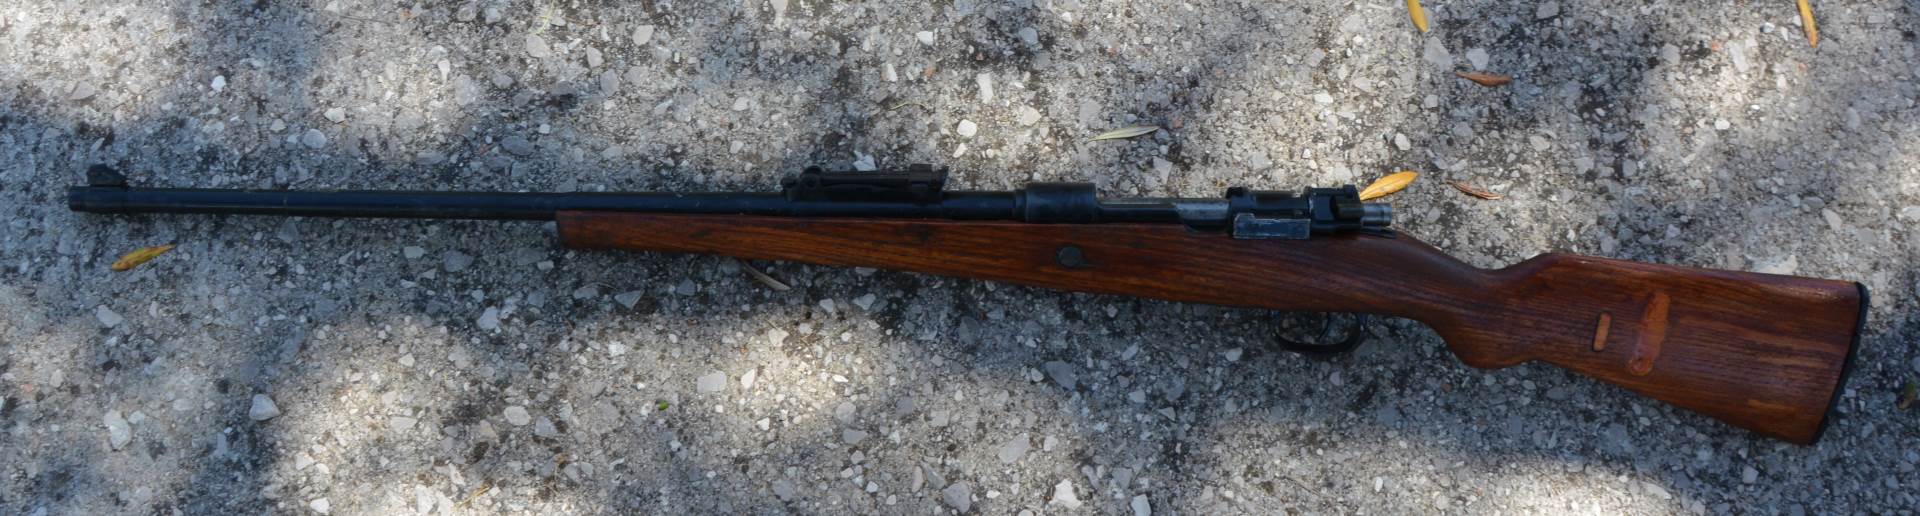  U Herceg Novom pronađena puška u ilegalnom posjedu 